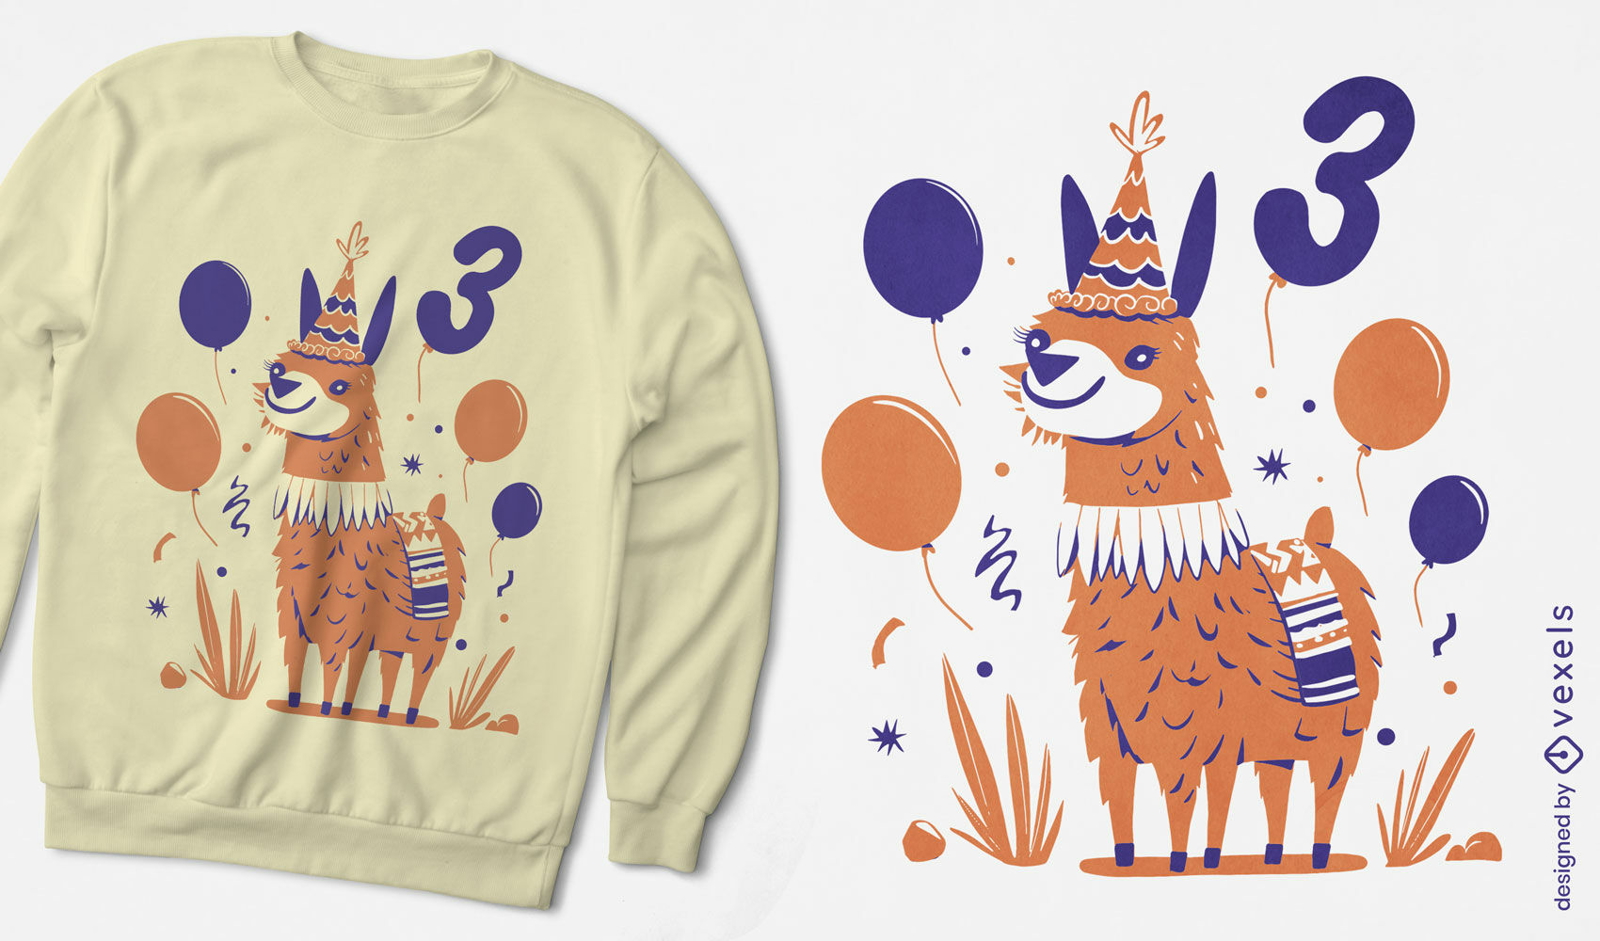 Llama animal birthday party t-shirt design